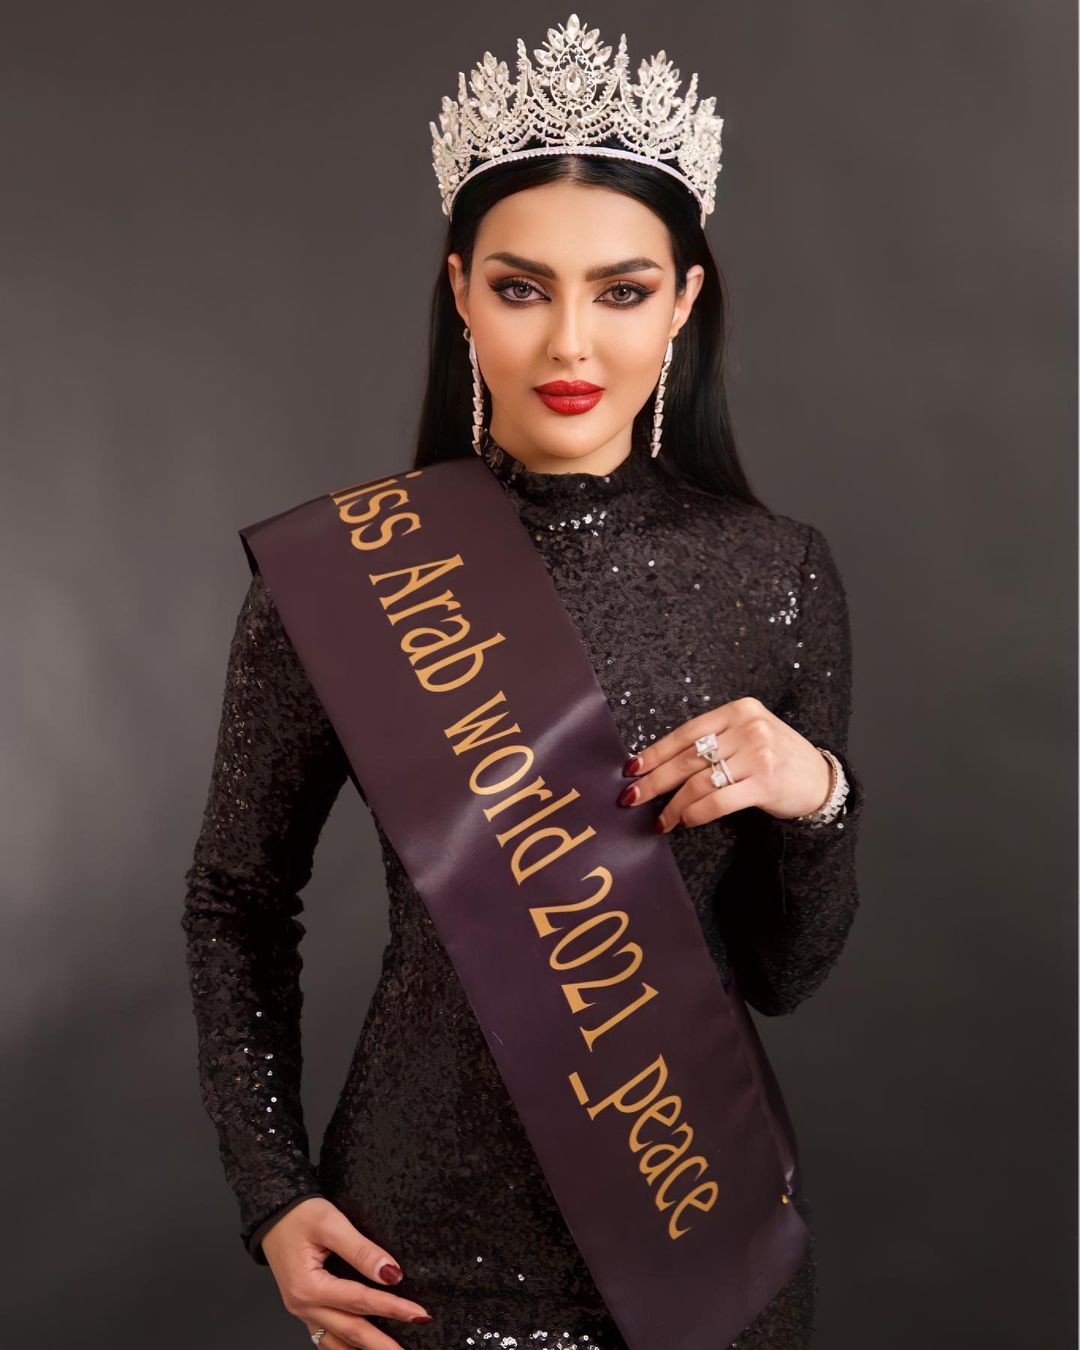 Nhan sắc gây tranh cãi của người đẹp Saudi Arabia đầu tiên thi Hoa hậu Hoàn vũ ảnh 4